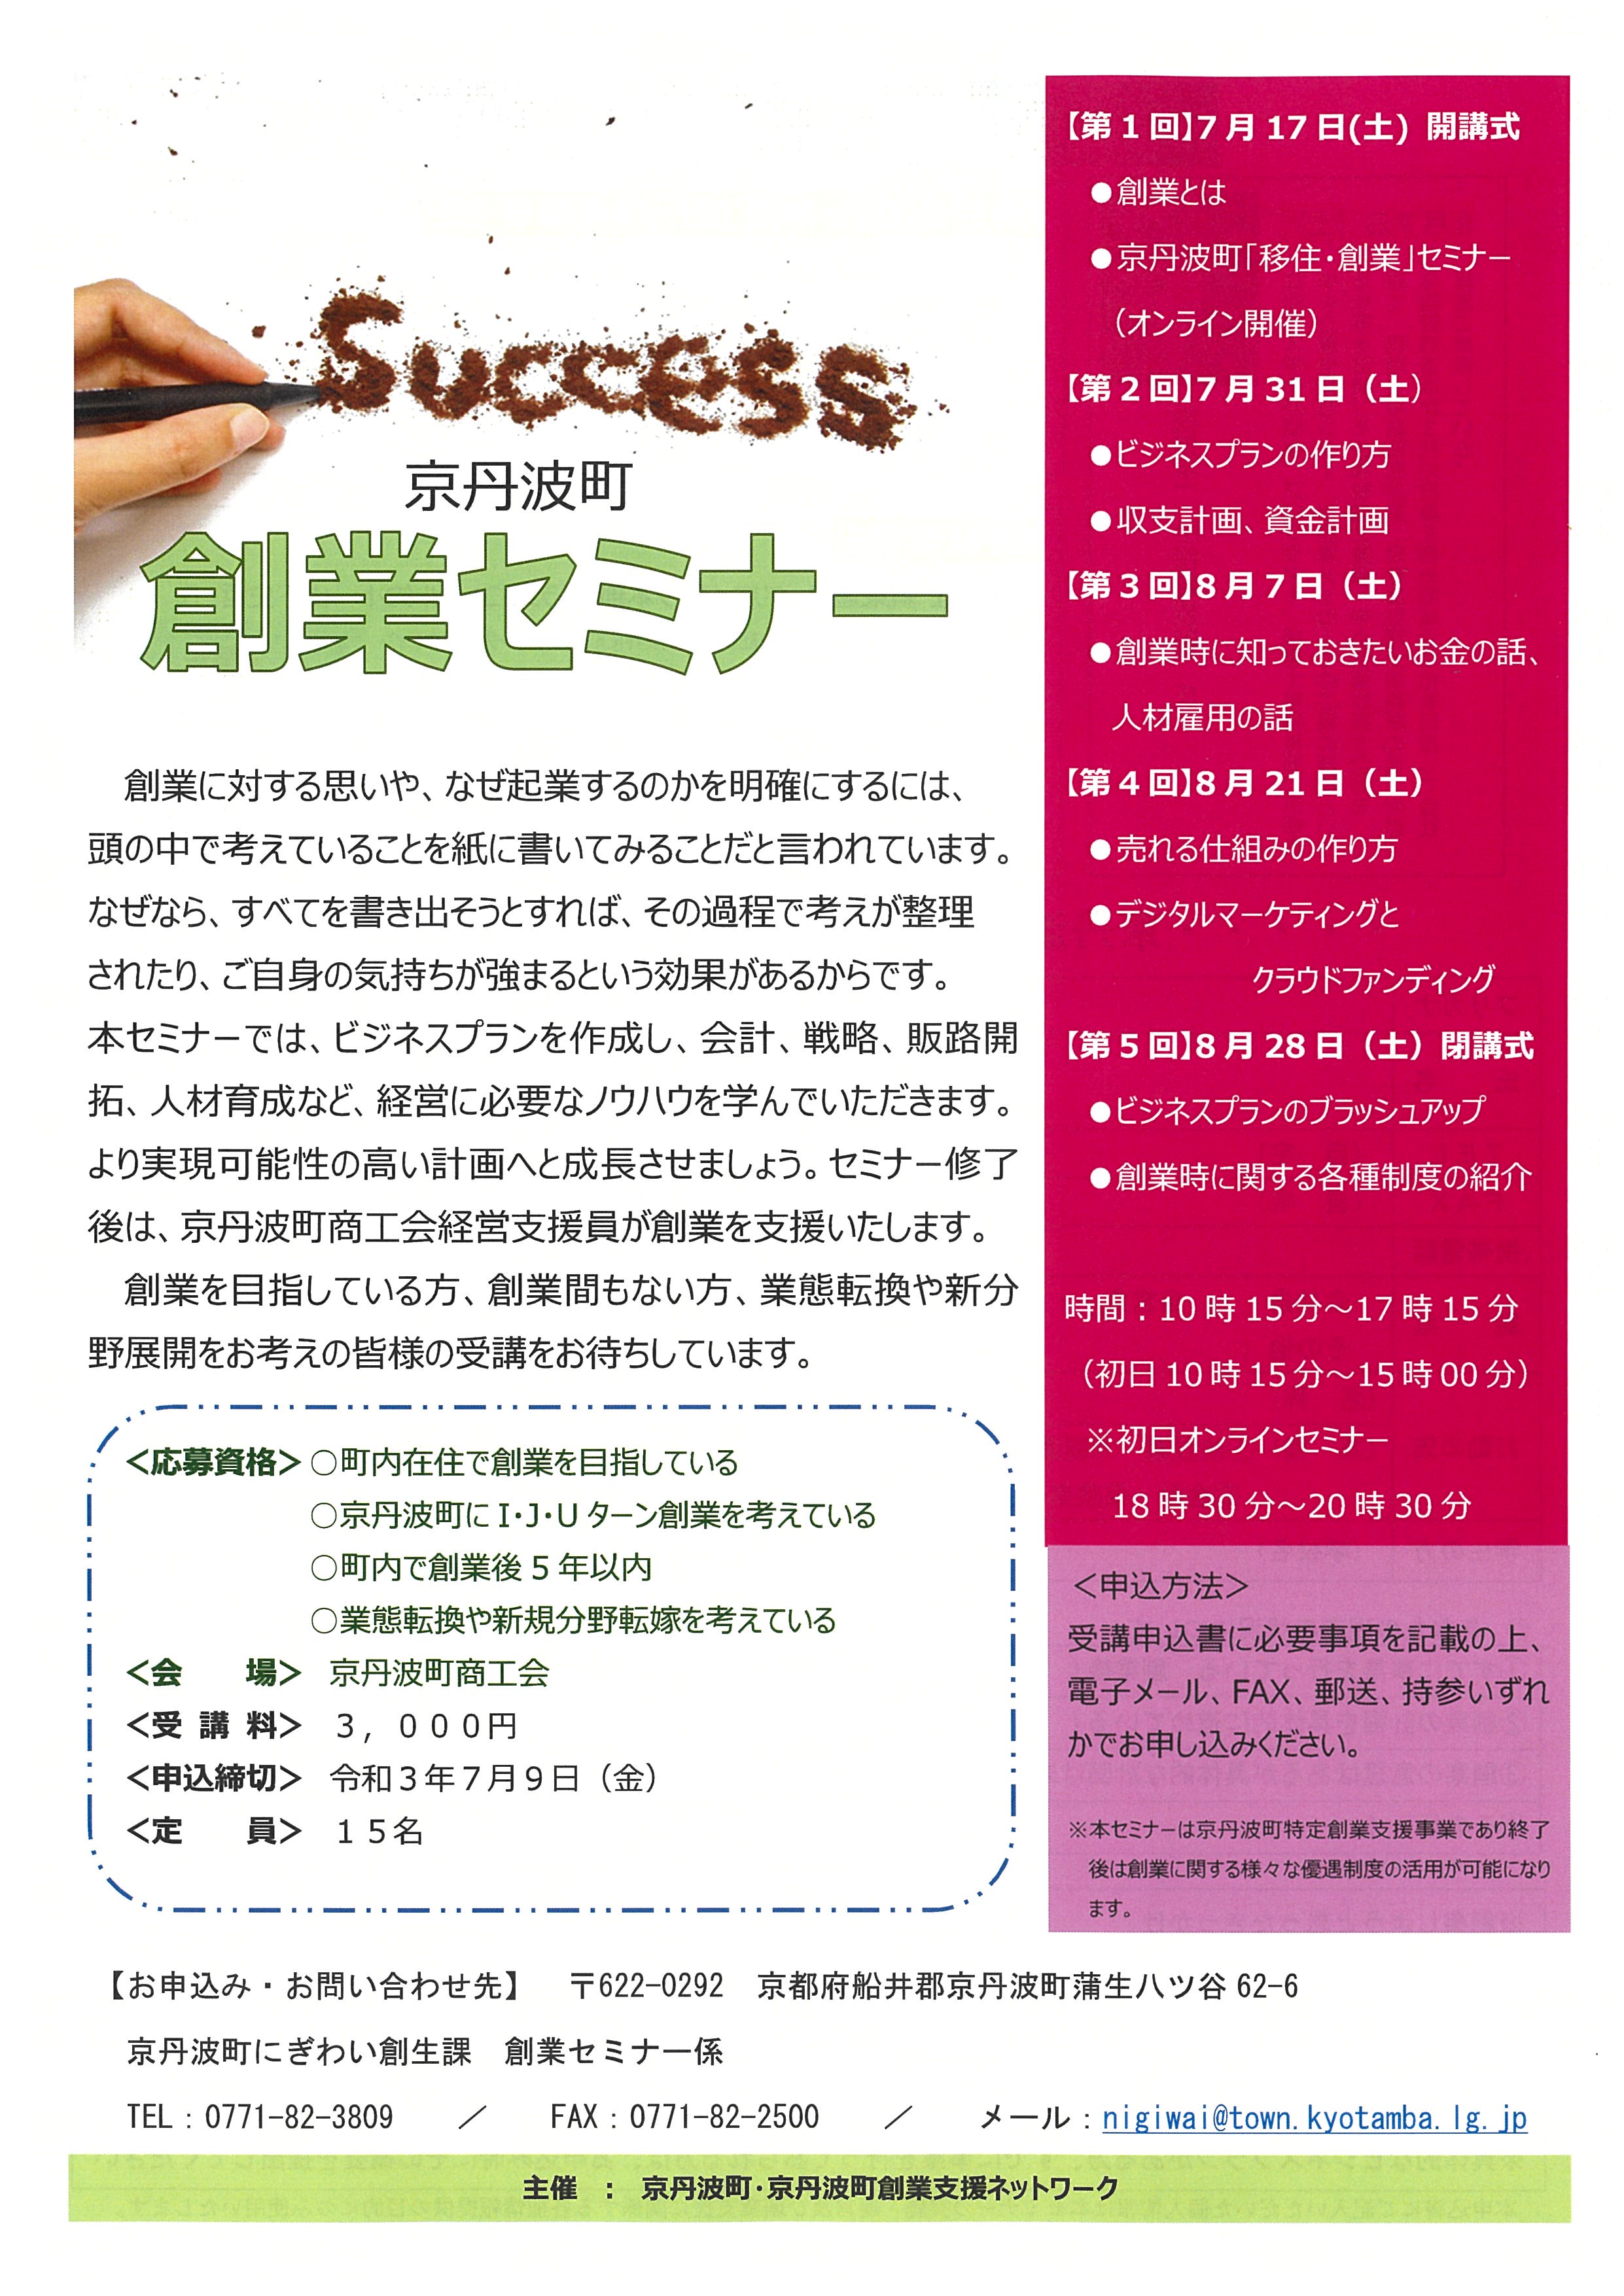 【セミナー】令和3年度京丹波町創業セミナー参加者募集について